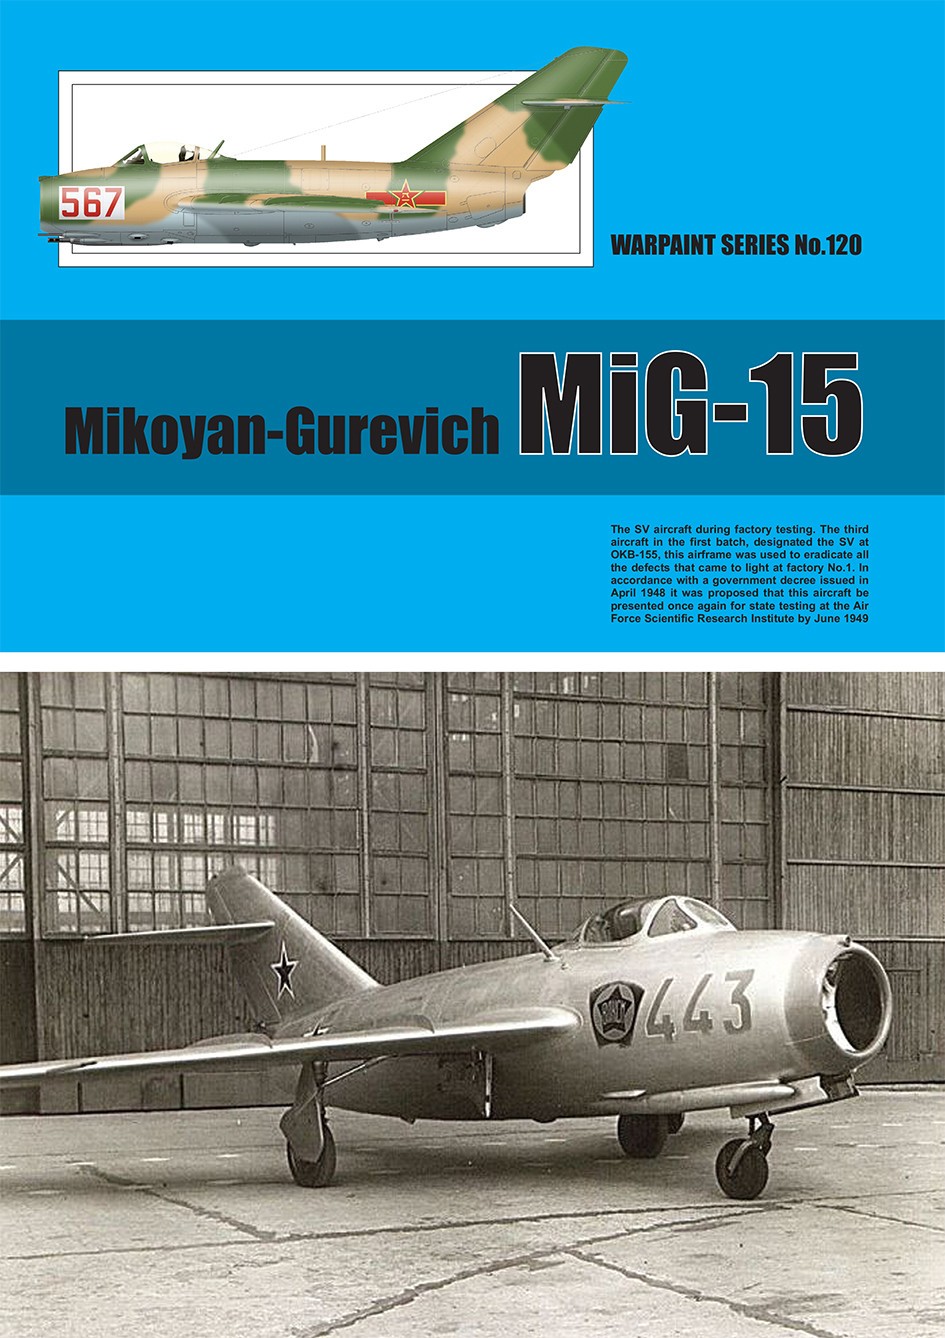  Warpaint Series Livre Mikoyan-Gurevich MIG-15. Très attendu depuis l